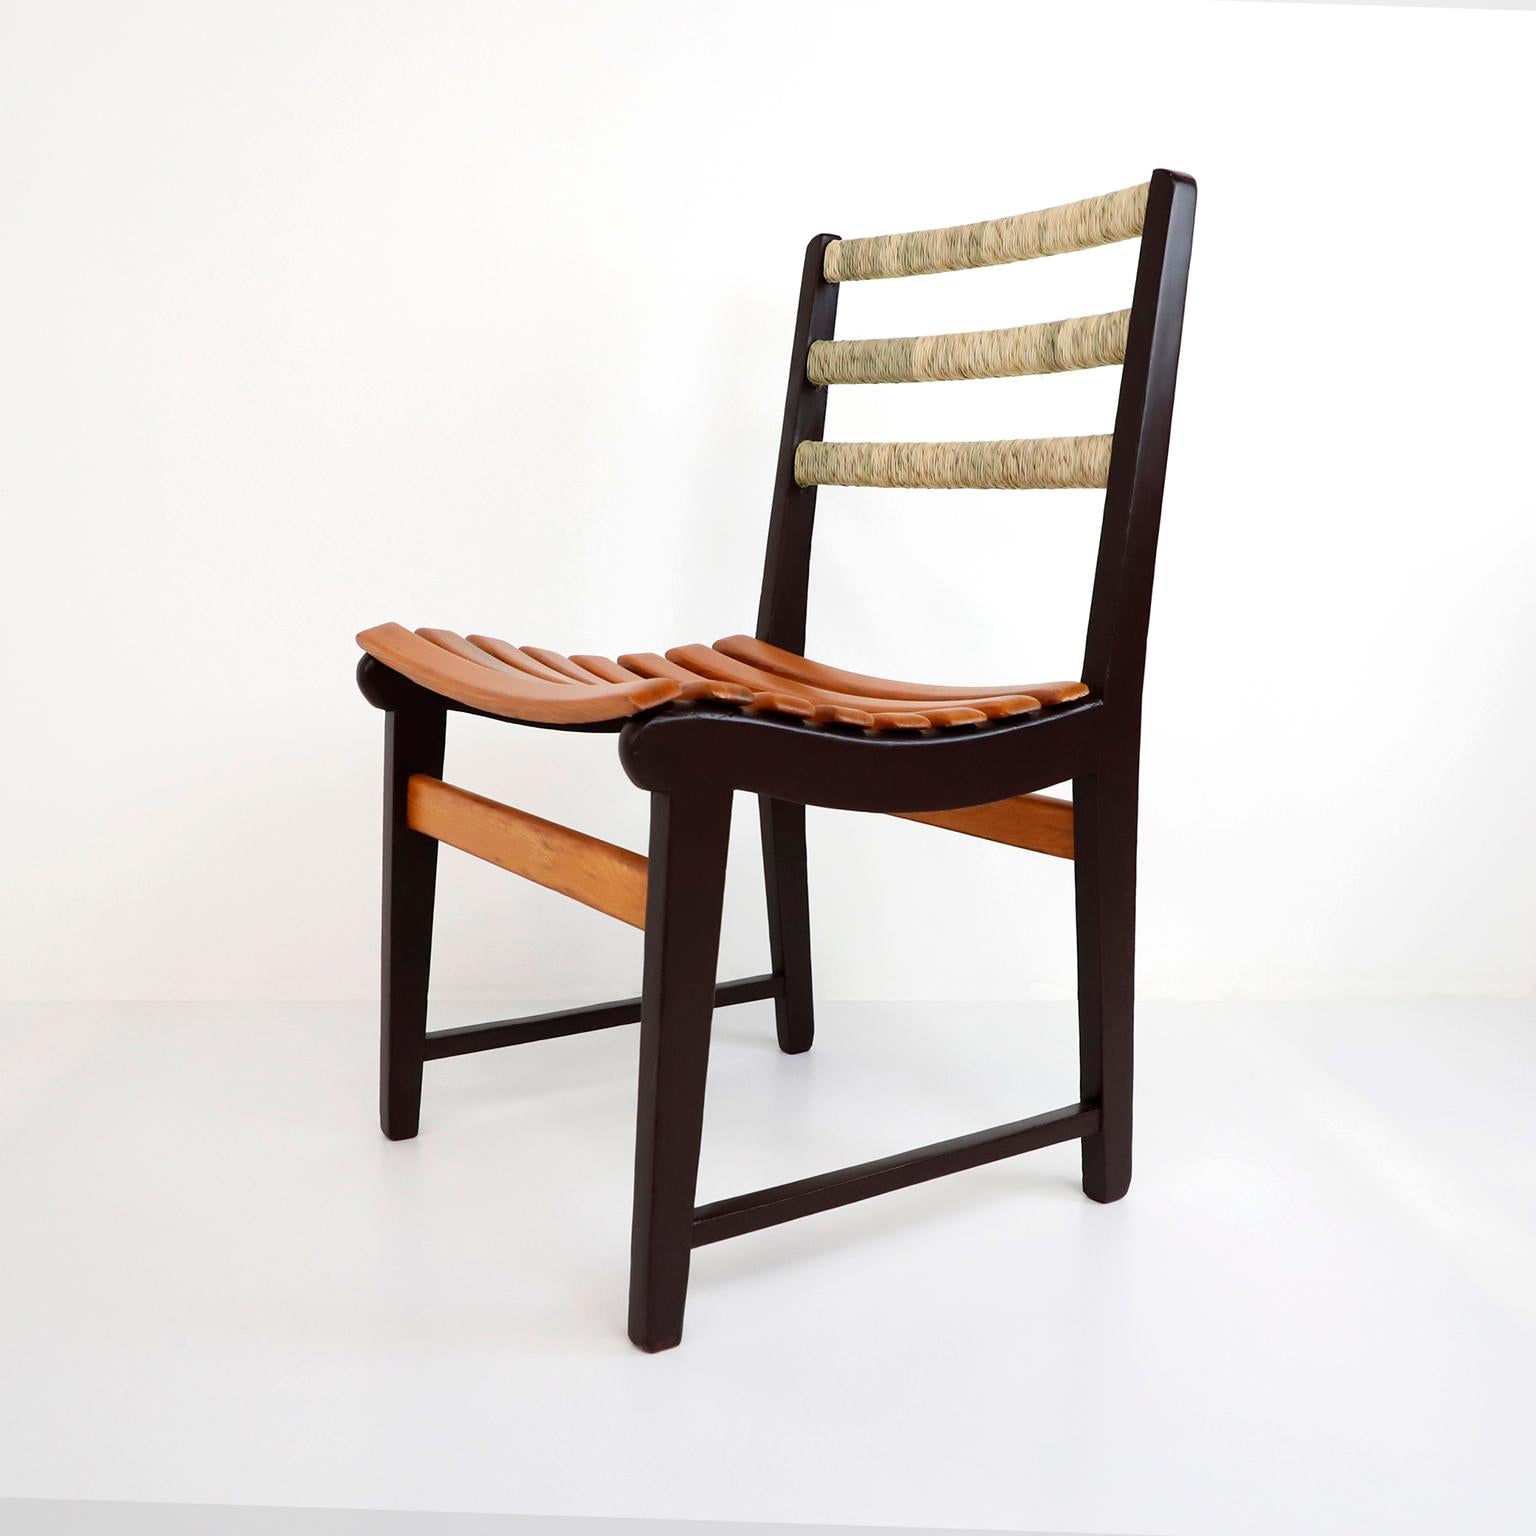 Nous vous proposons cet ensemble original de six chaises par Michael Van Beuren pour Domus en bois de pin et avec la couleur caractéristique Terracota Van Beuren, conçu par le designer américain du Bauhaus, Michael Van Beuren au Mexique, vers 1950,